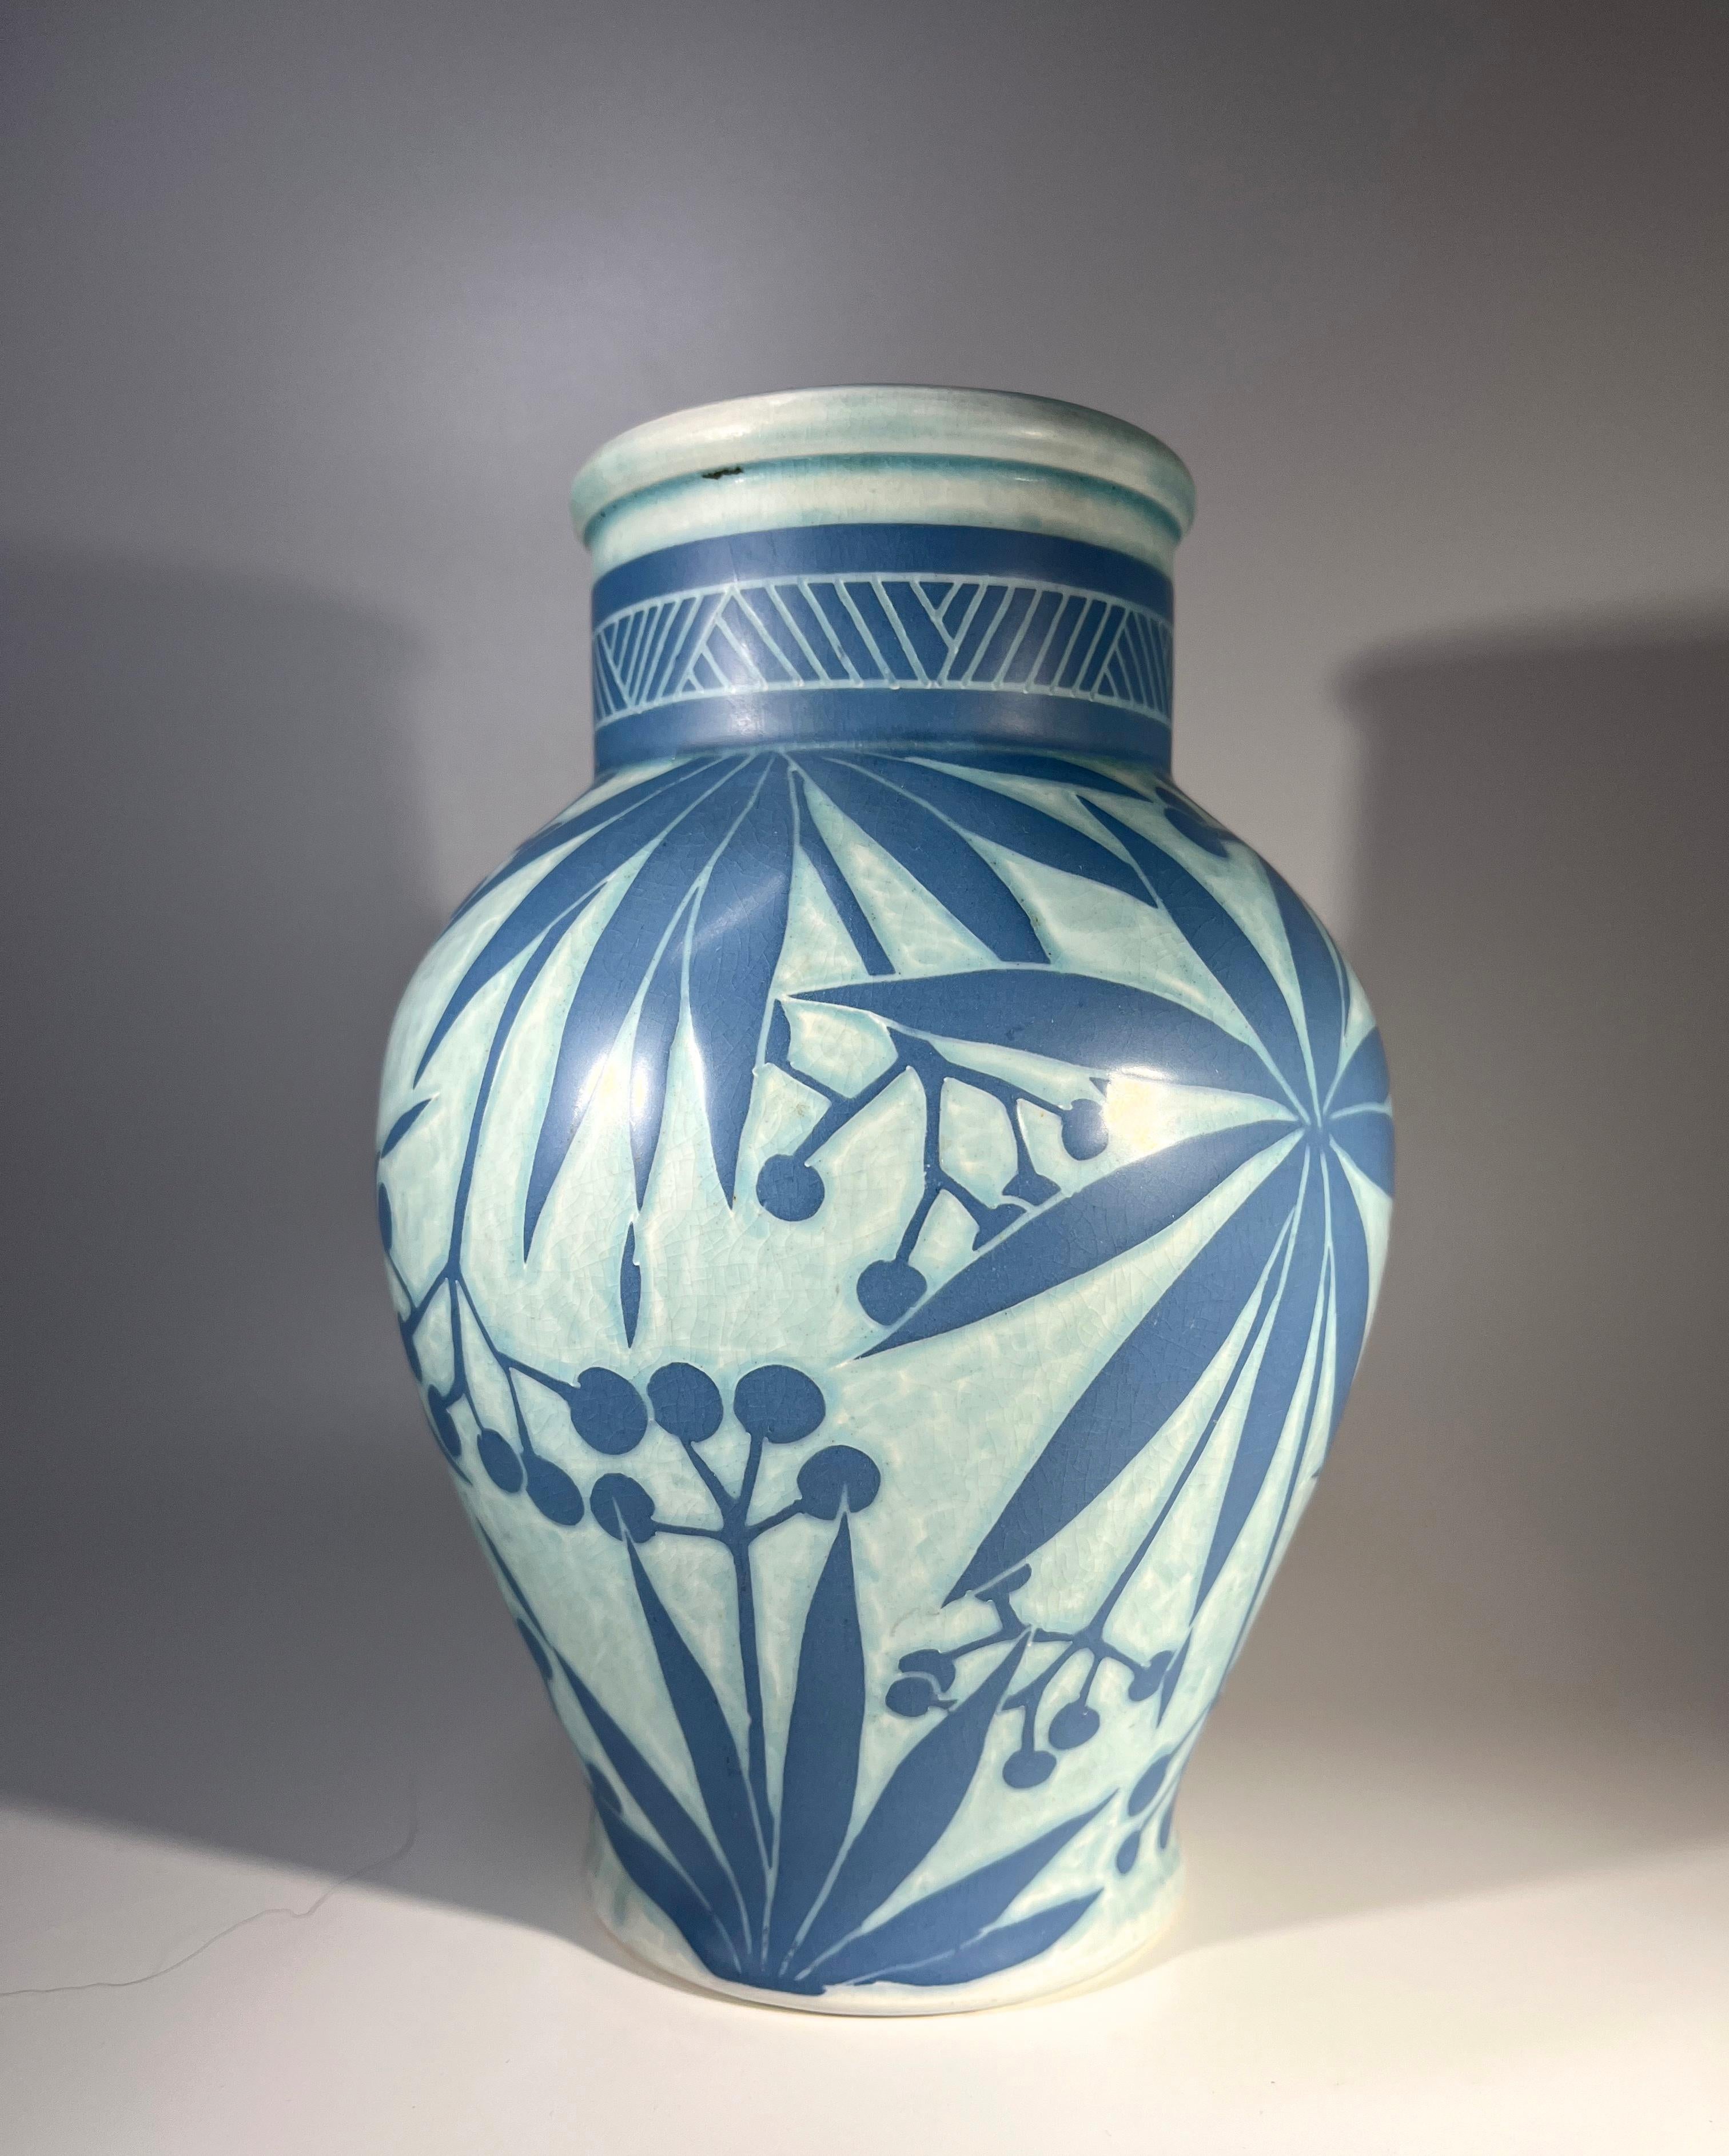 Vase en céramique sgraffite de Josef Ekberg pour Gustavsberg. 
Les couches sont composées d'un fond bleu pâle et d'un décor de feuilles de palmier bleu moyen.
Signé Ekberg et daté de 1911 
Hauteur 8 pouces, Largeur 5.5 pouces
Un exemple unique du